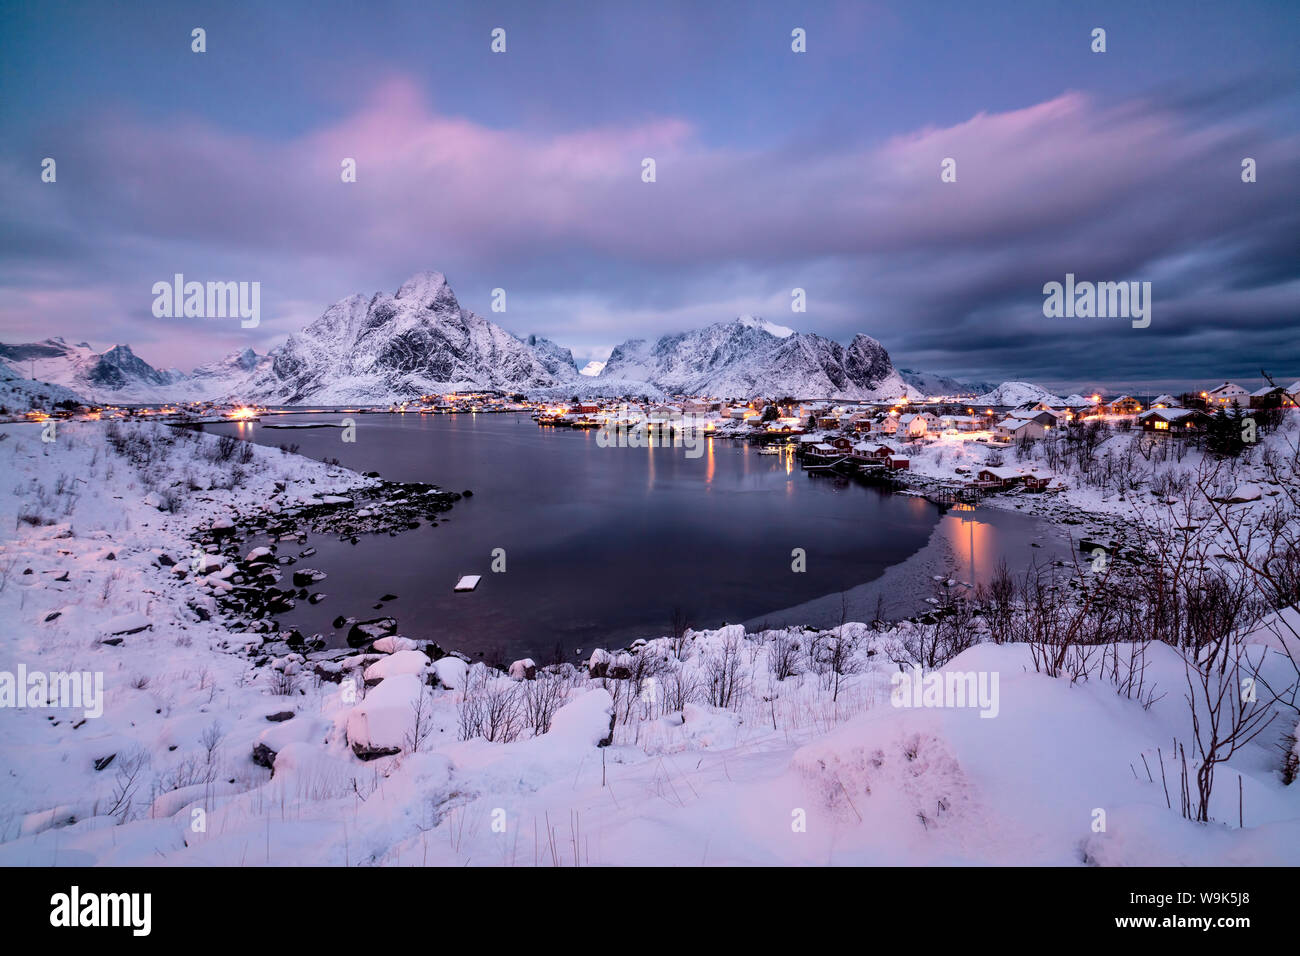 Les couleurs de l'aube sur le village de pêcheurs entouré de sommets enneigés et la mer gelée, Reine, Nordland, îles Lofoten, Norvège, de l'Arctique, Scandinavie, Europe Banque D'Images